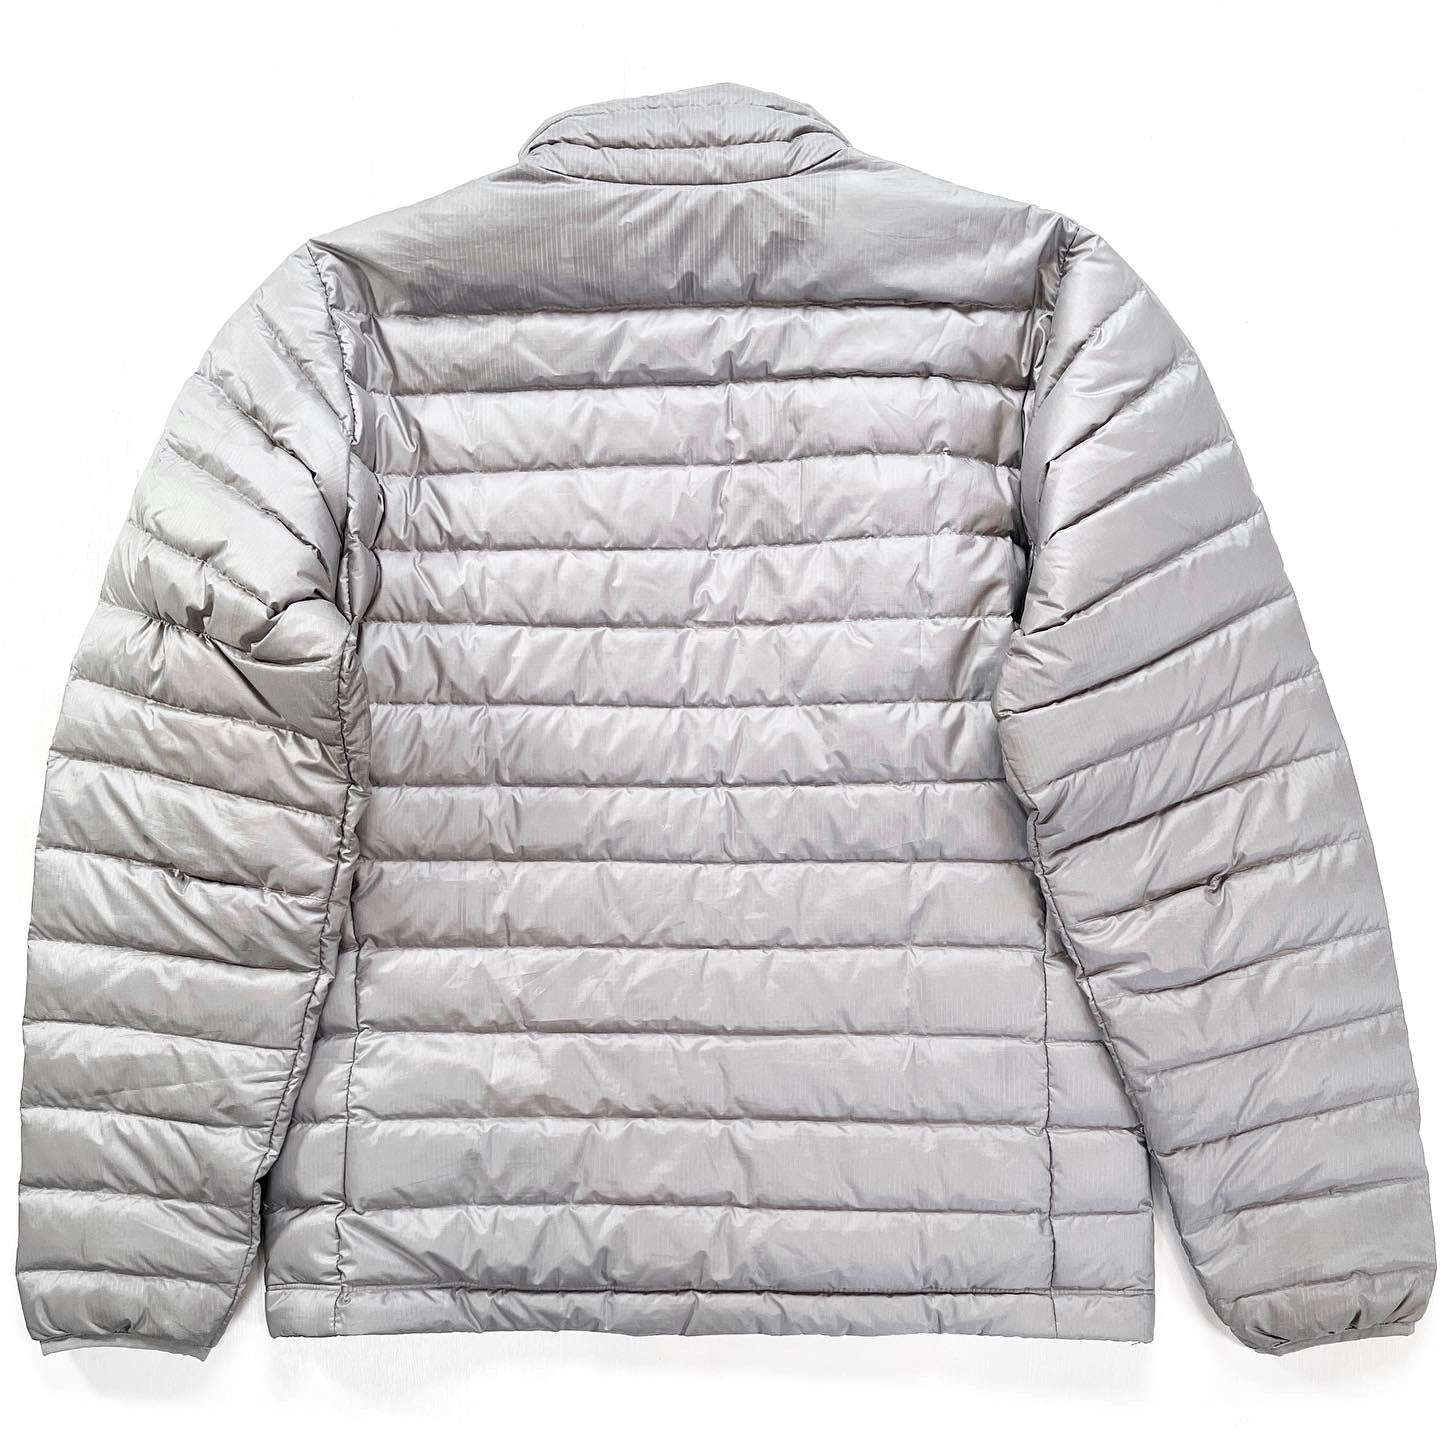 2015 Patagonia Mens Full-Zip Down Sweater, Light Grey (M)